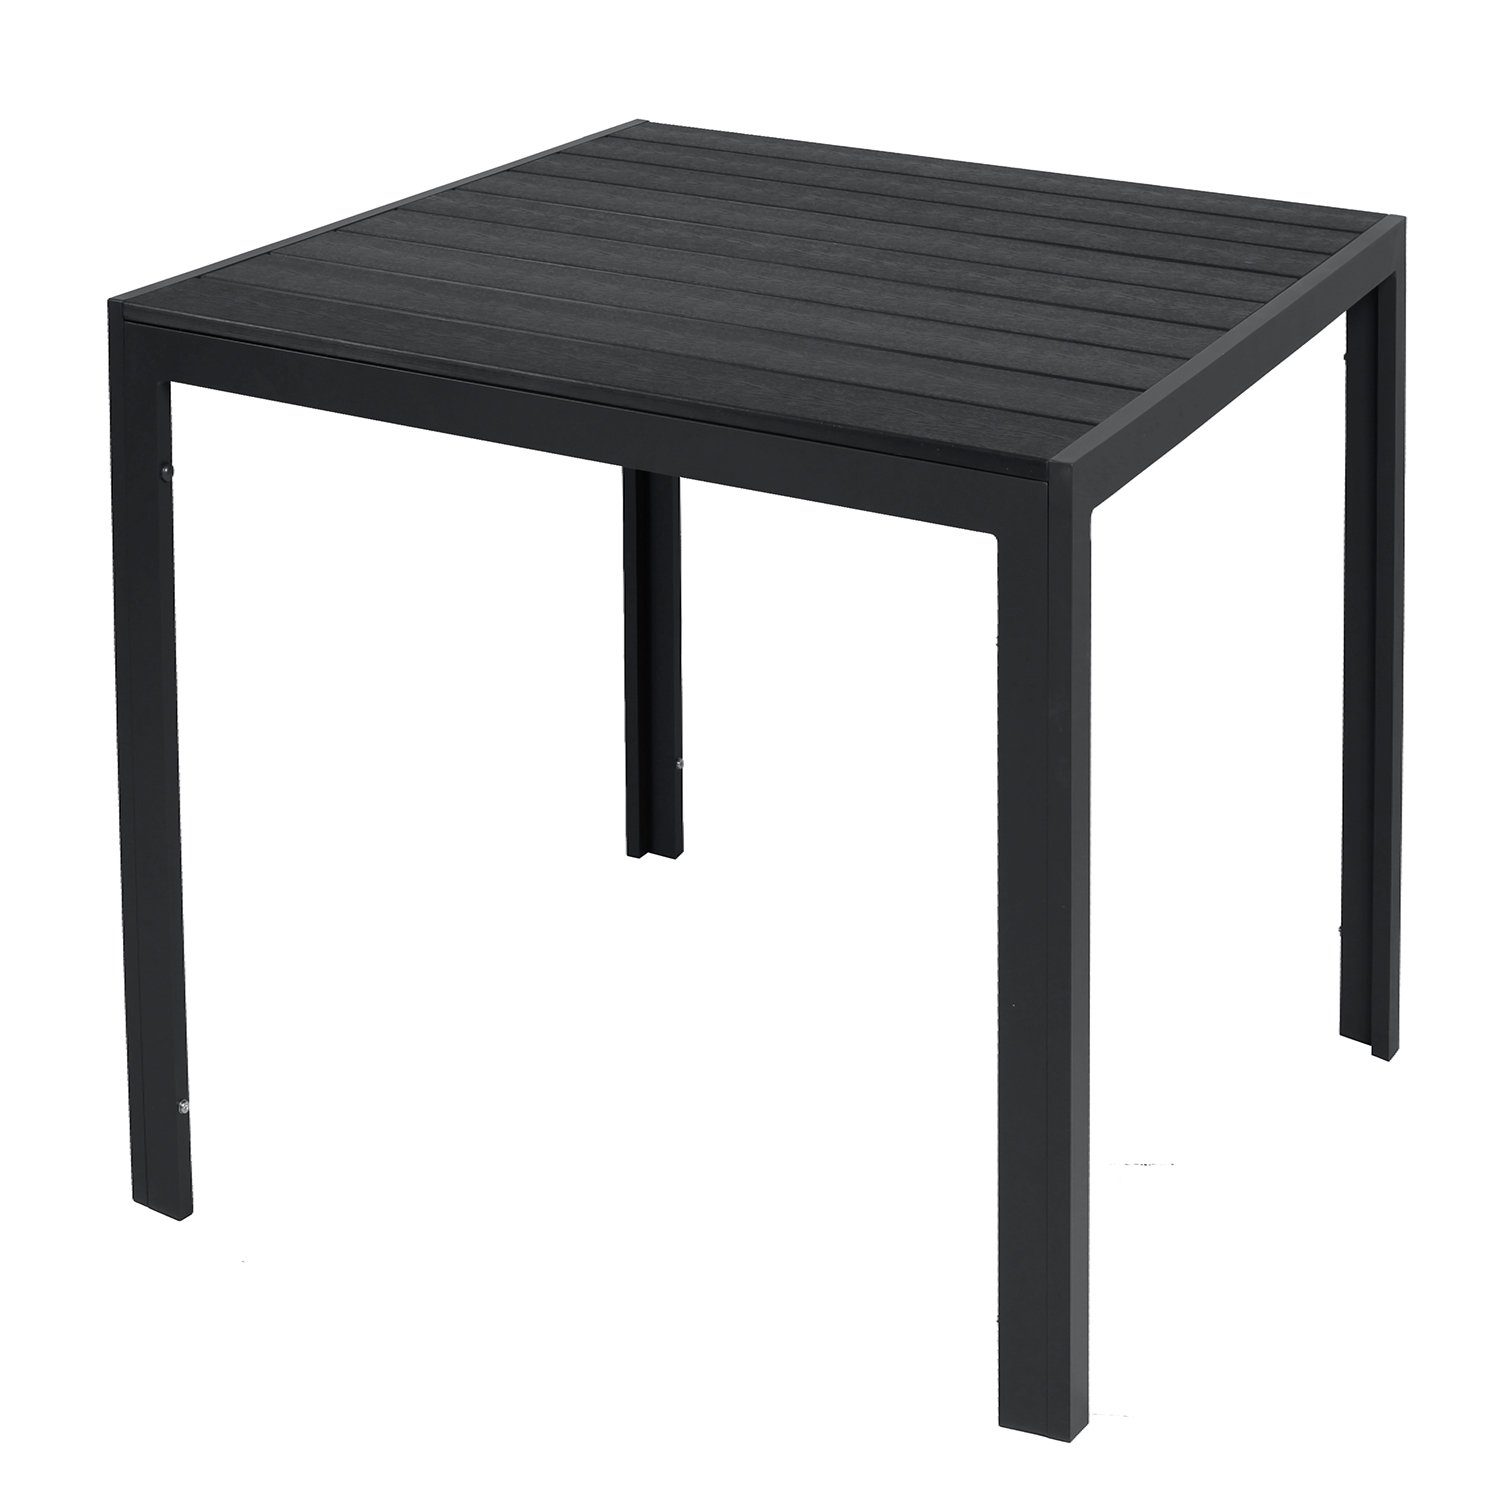 / anthrazit Aluminium Non-Wood Küchentisch Gartentisch schwarz INDA-Exclusiv 80x80cm